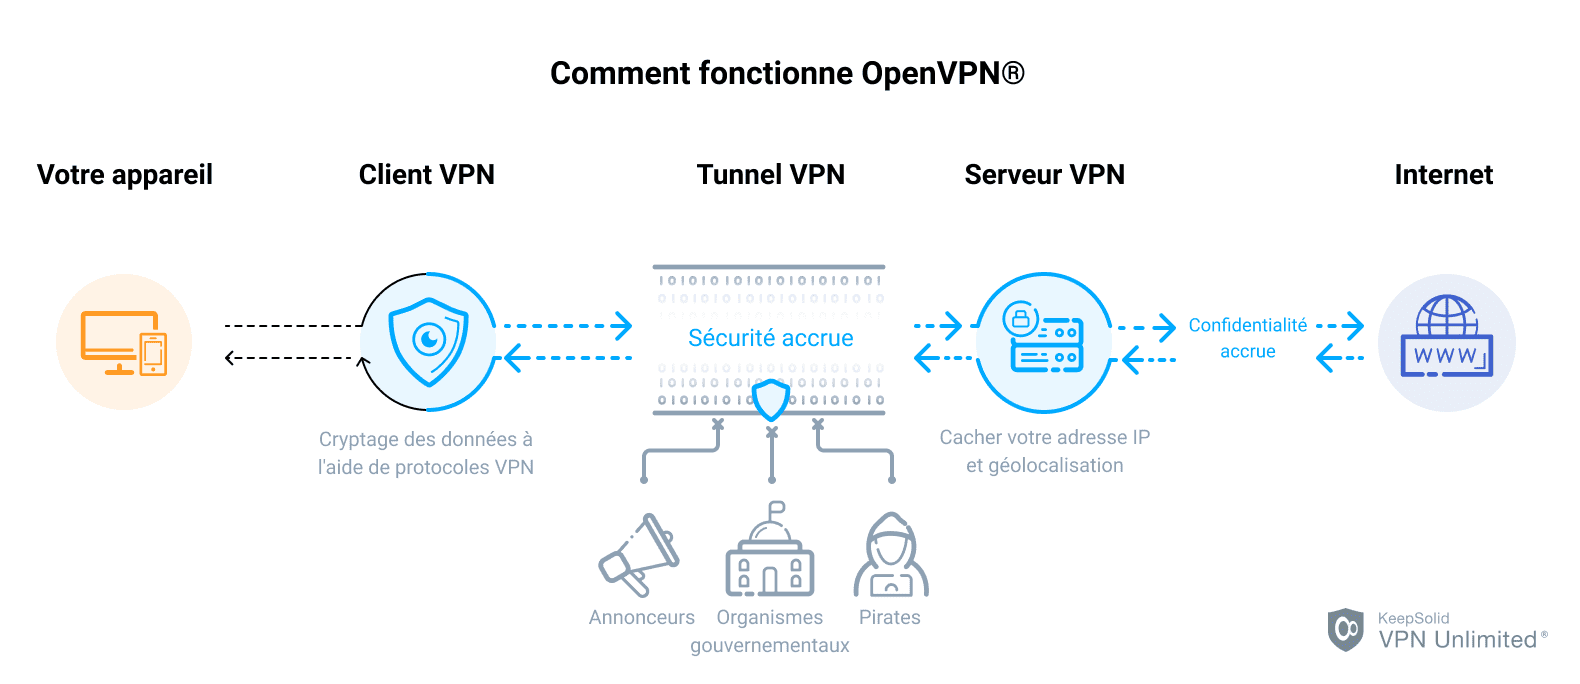 Comment fonctionne OpenVPN®